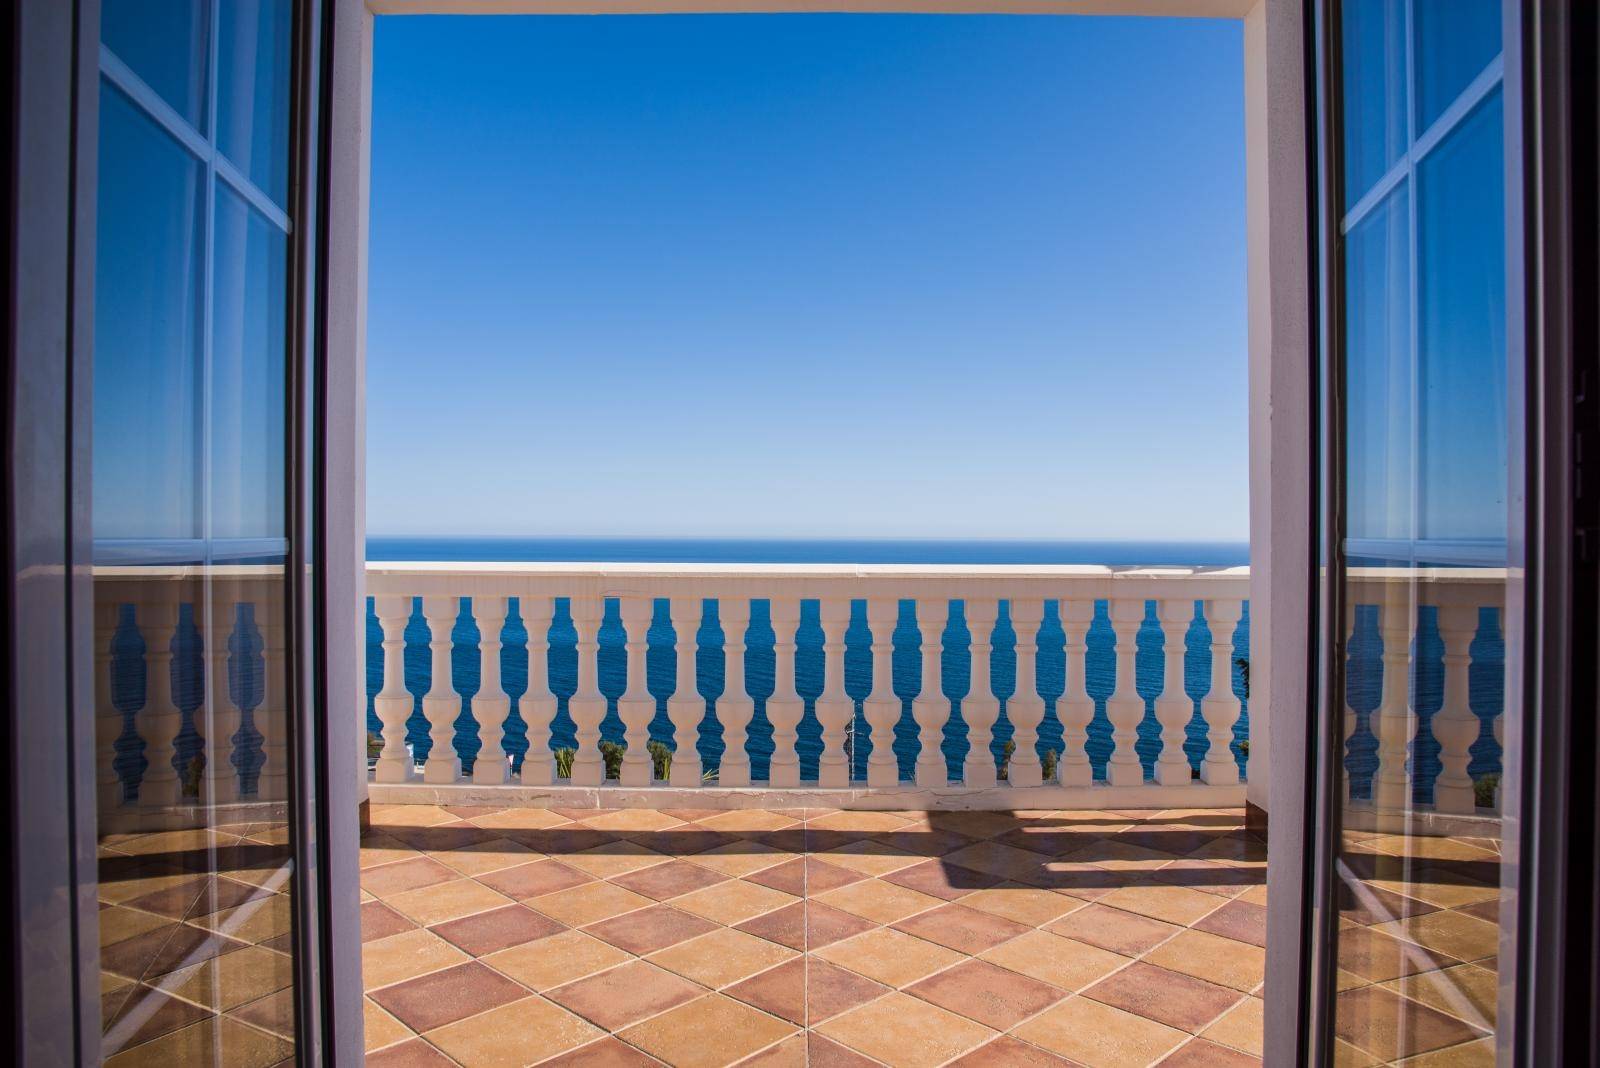 Magnifique villa à vendre à Urb.Alfamar, avec une vue incroyable sur la mer !